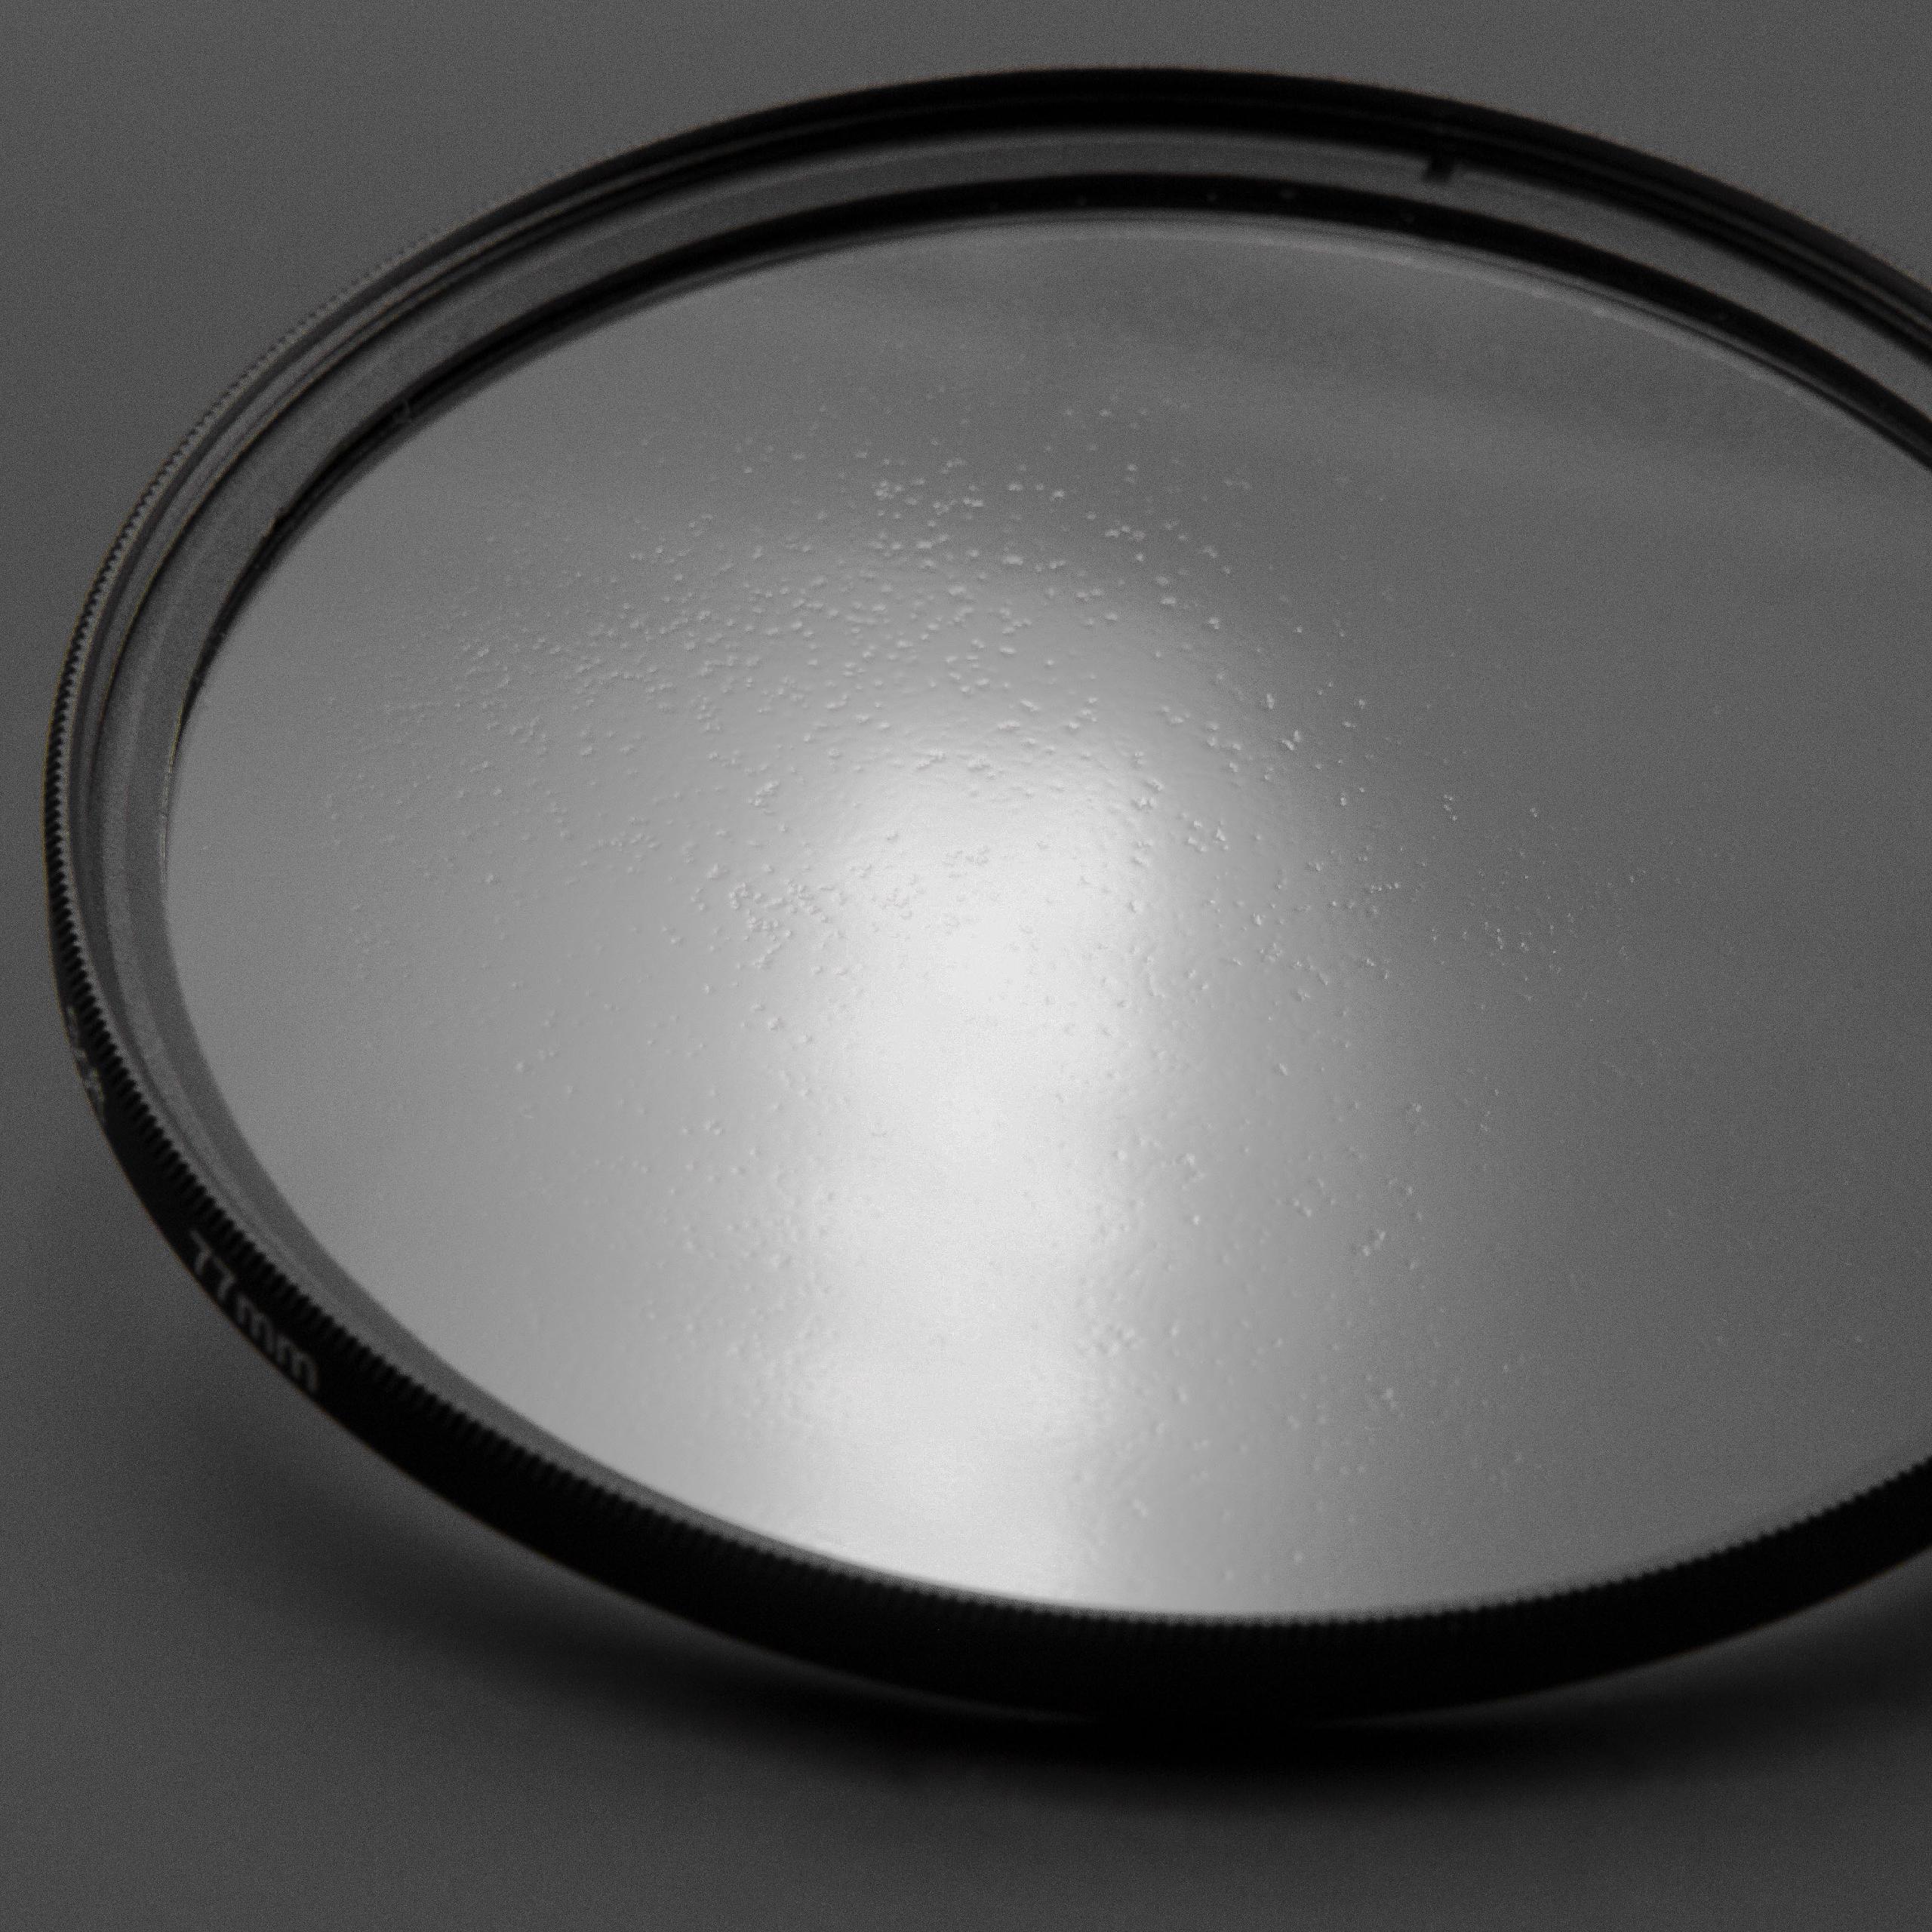 Filtro soft-focus per fotocamere e obiettivi con filettatura da 77 mm 